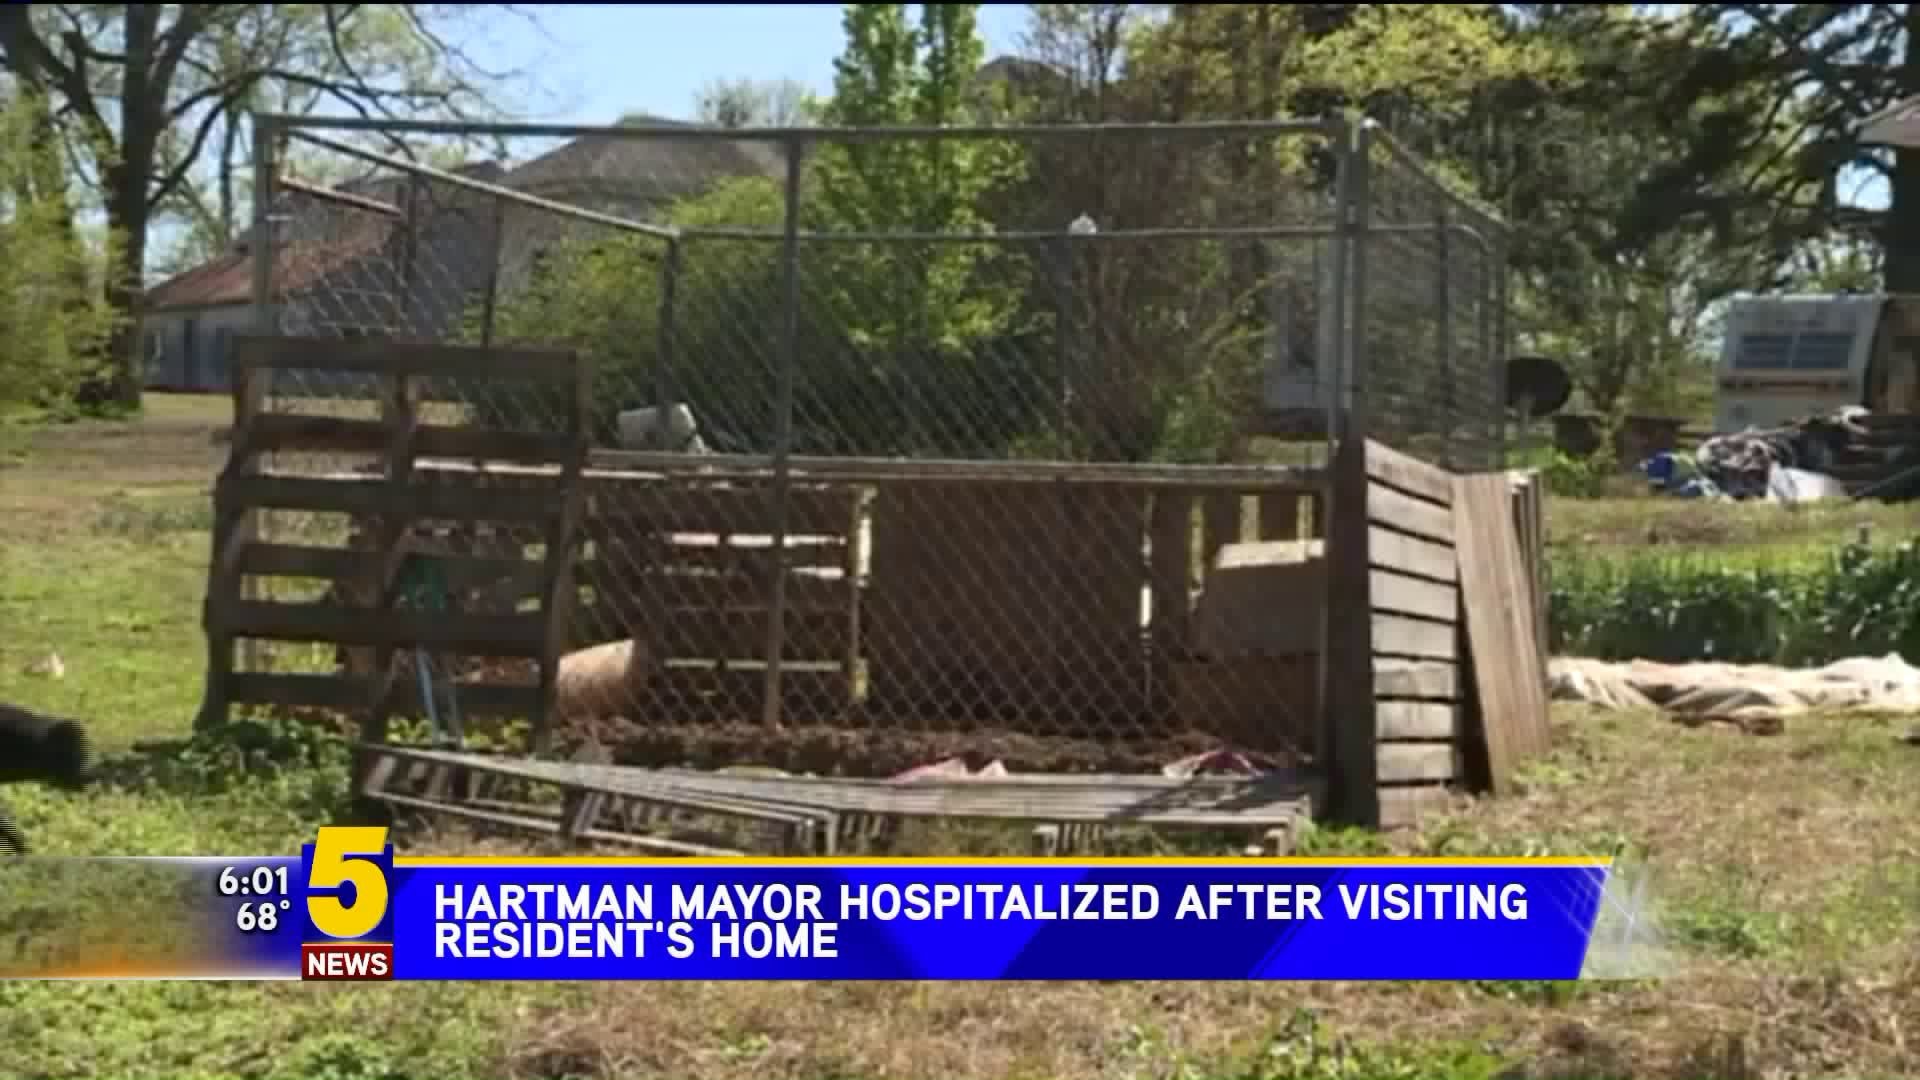 Hartman Mayor Hospitalized